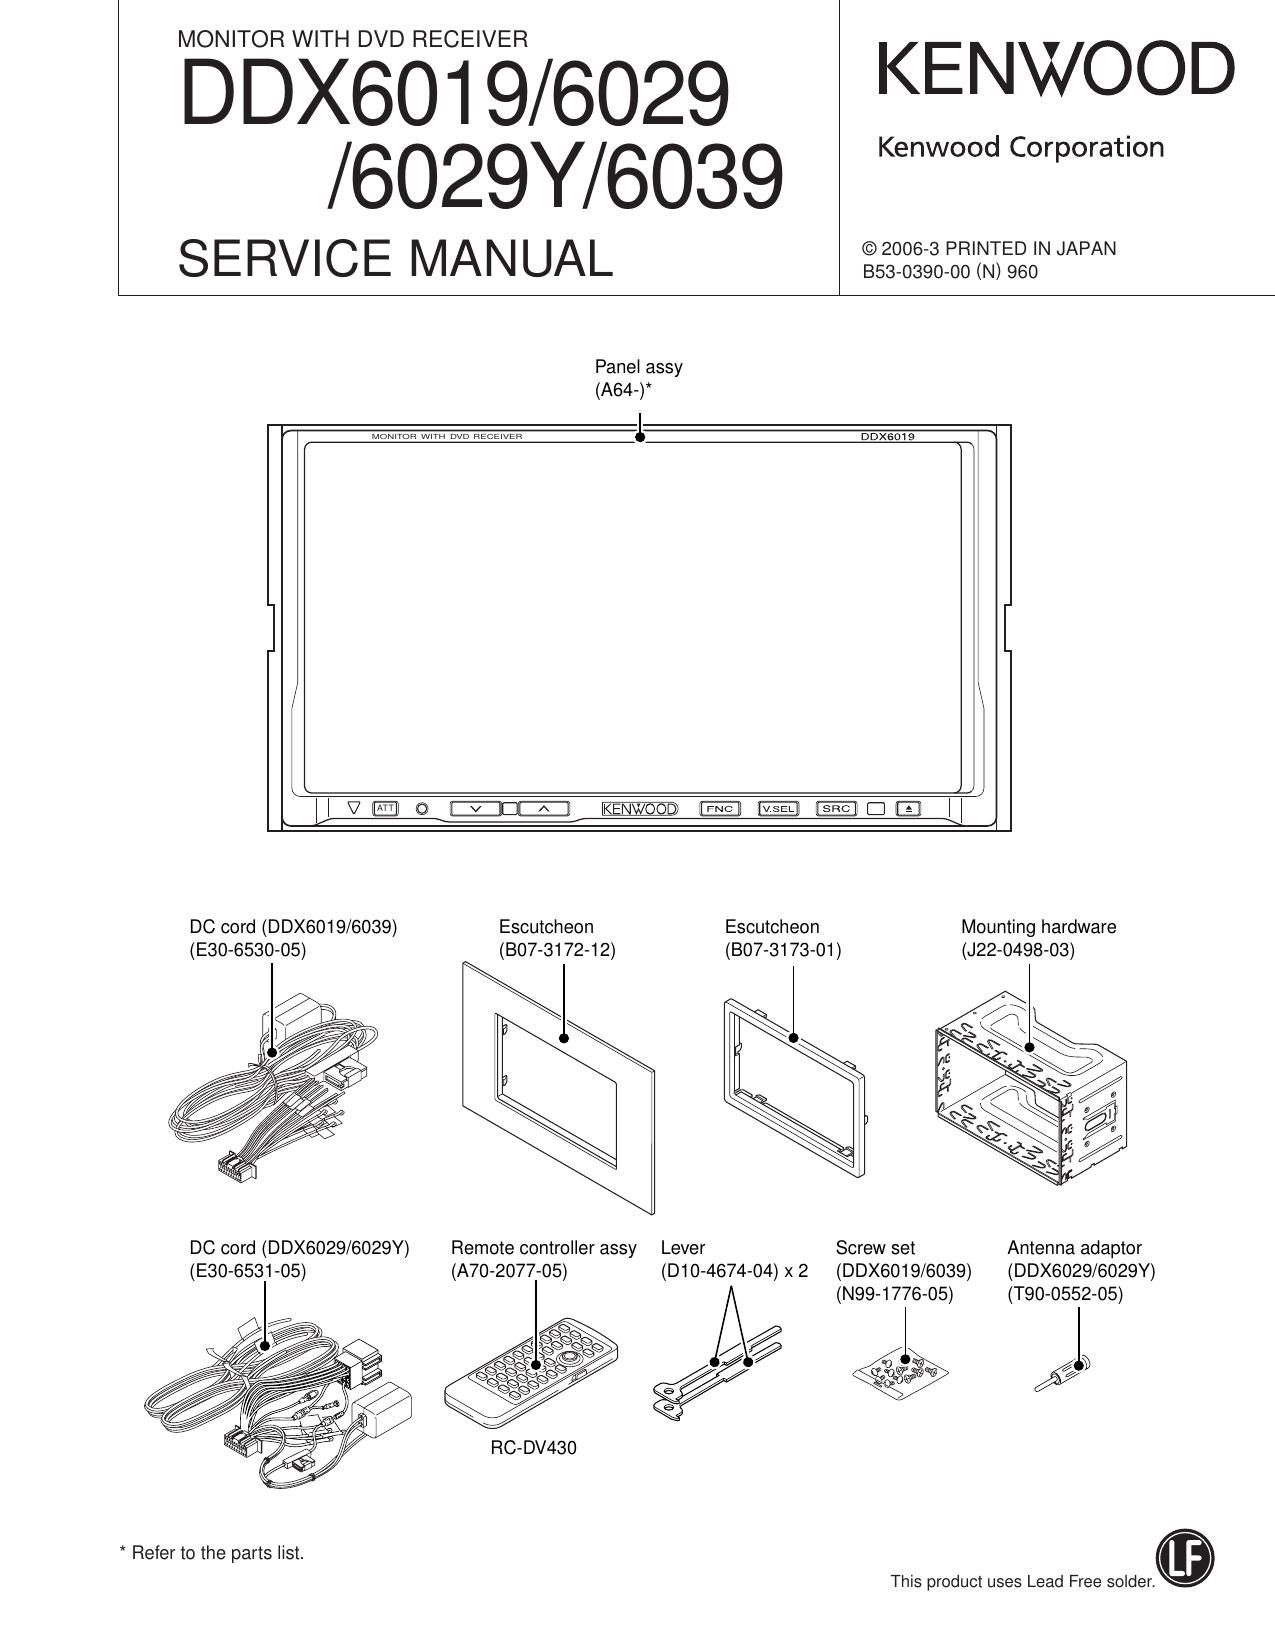 Kenwood DDX 6029 Y HU Service Manual